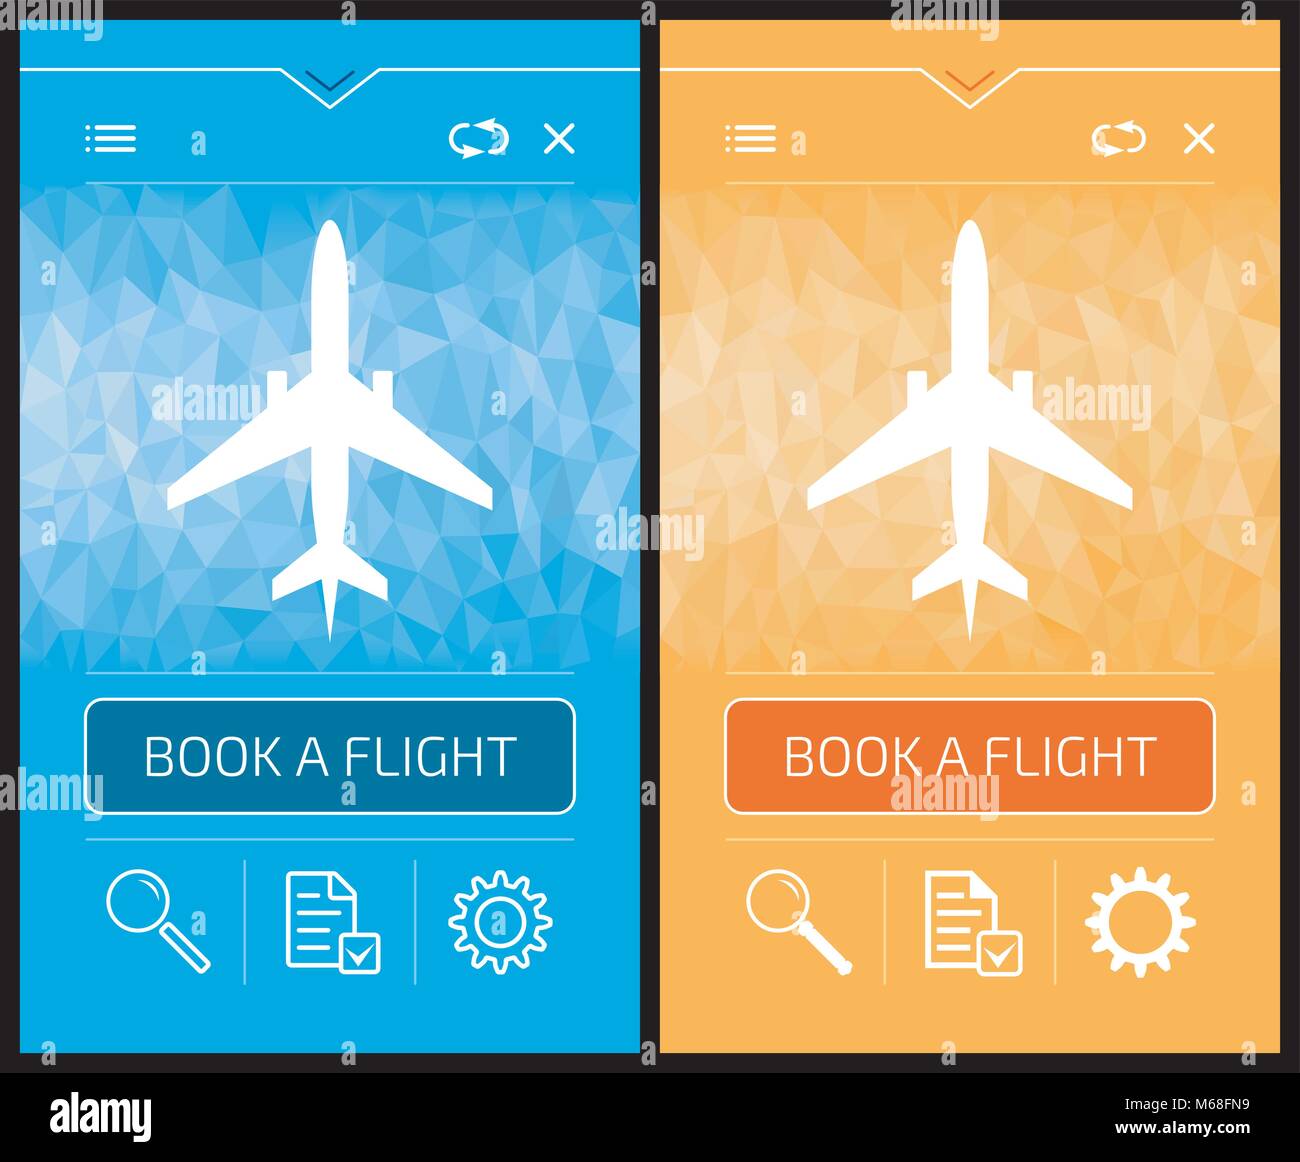 Online Booking Flight - Smartphone Screens Stock Vector